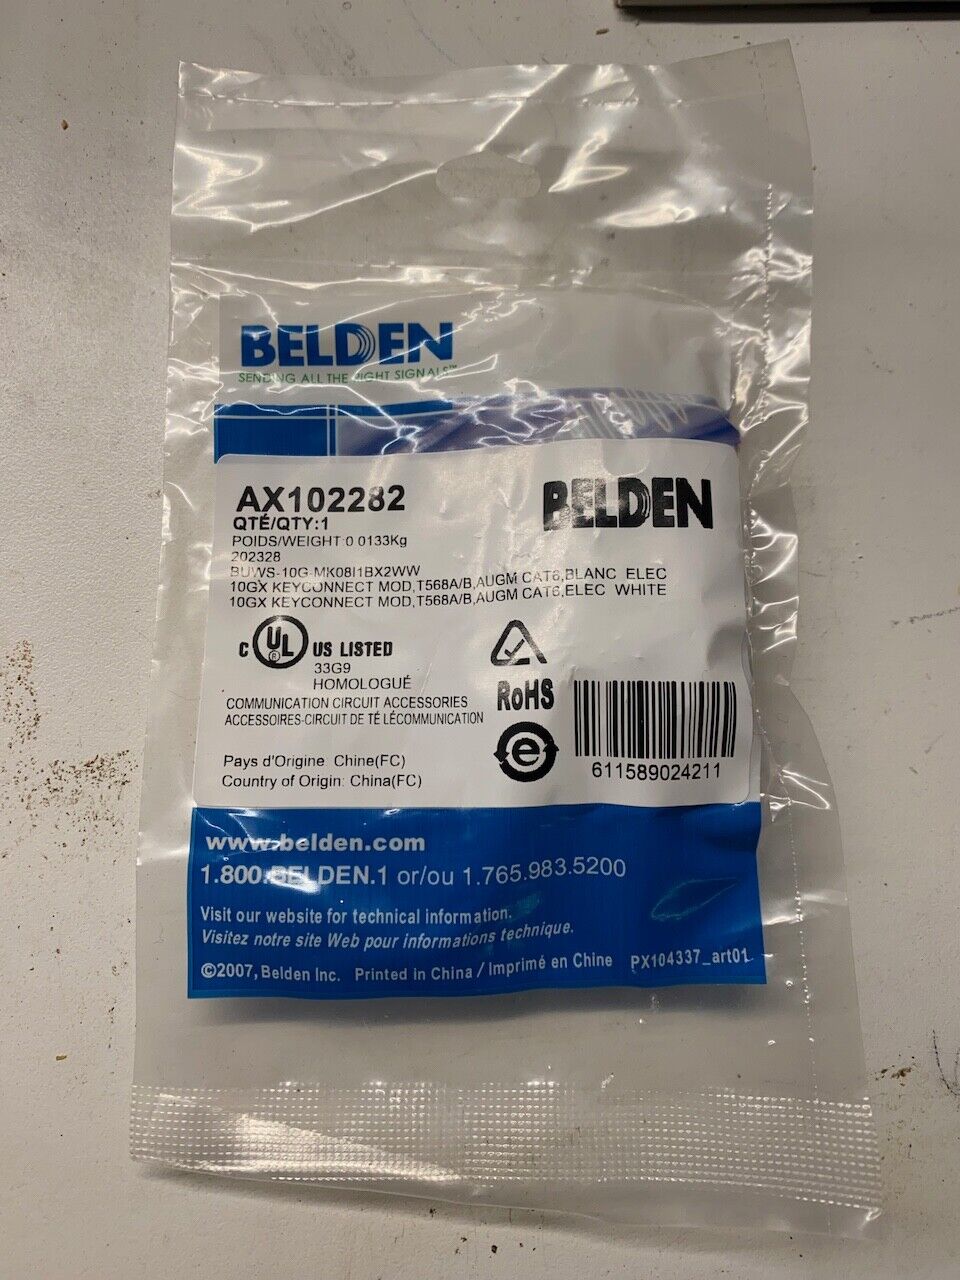 Belden AX102282 CAT 6 KEYCONNECT (PACKAGE OF 1) RJ45 keystone